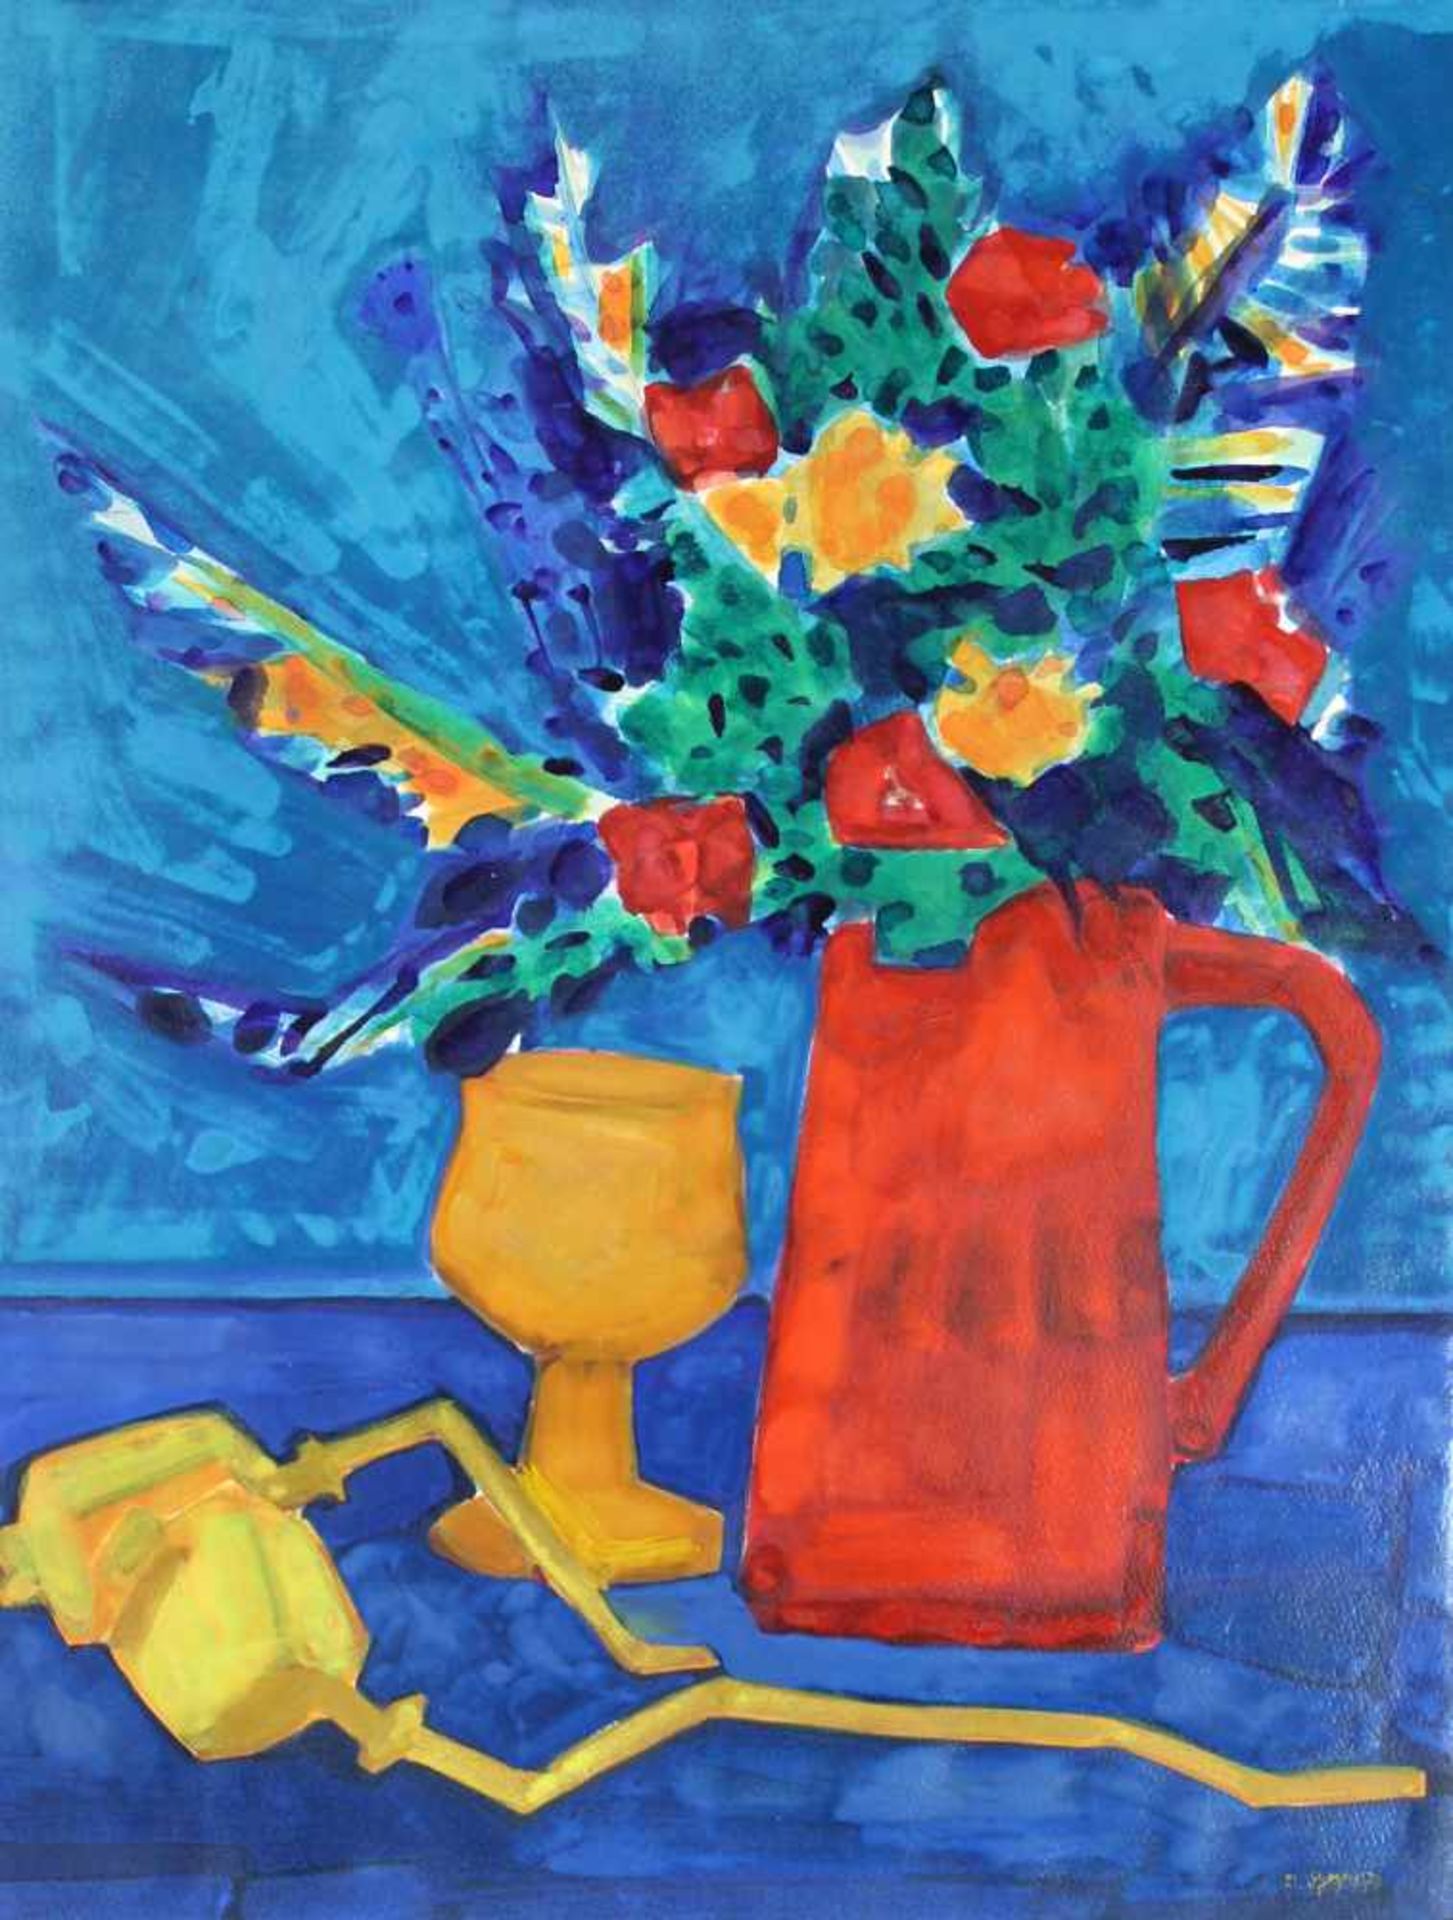 Dieter TYSPE-VOGT (1937 - 1994). Blumen im roten Krug. 1979. 56 cm x 42 cm. Gemälde. Öl auf leichtem